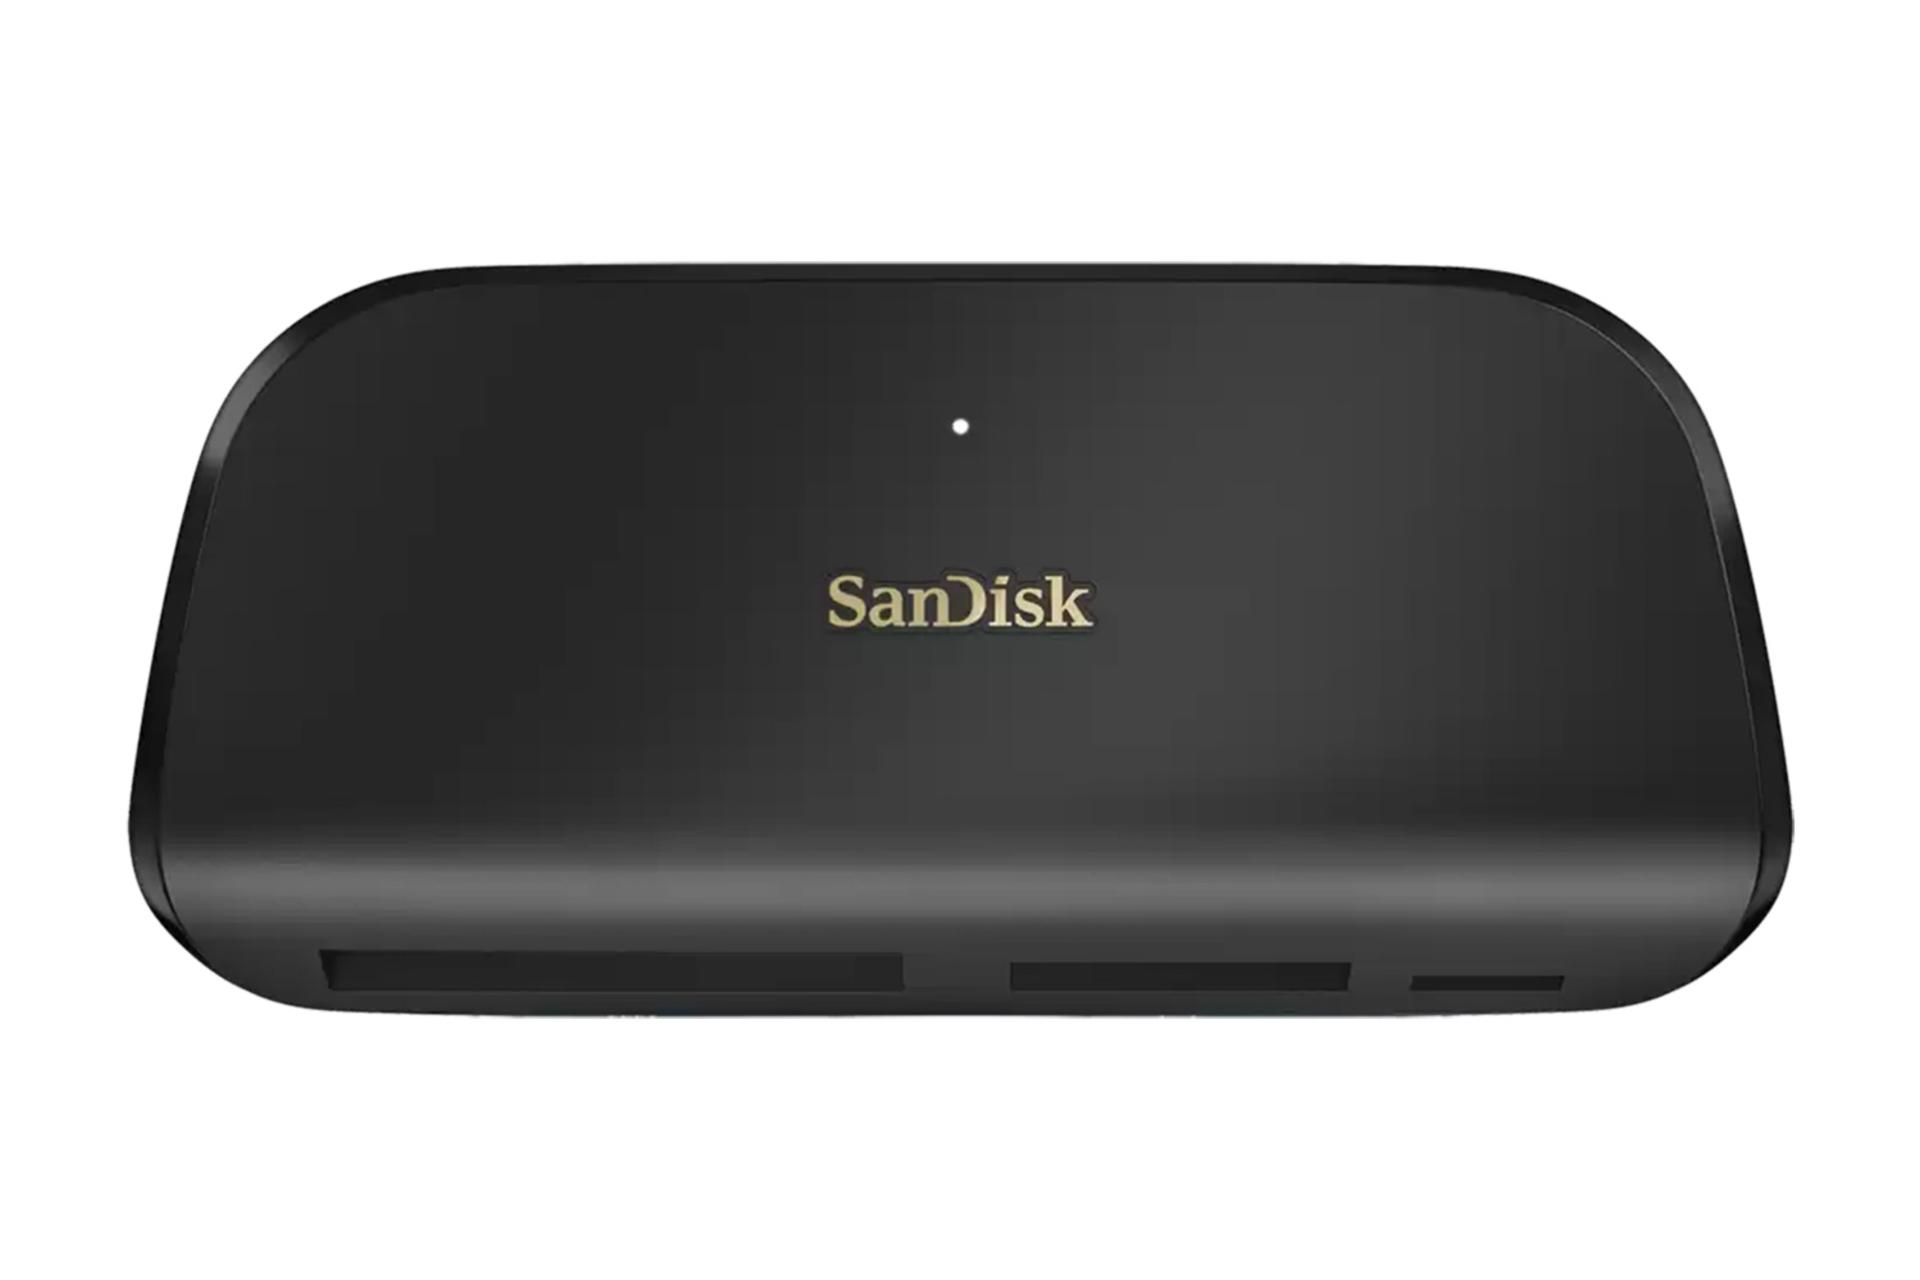 مرجع متخصصين ايران كارت خوان سن ديسك SanDisk ImageMate PRO USB-C